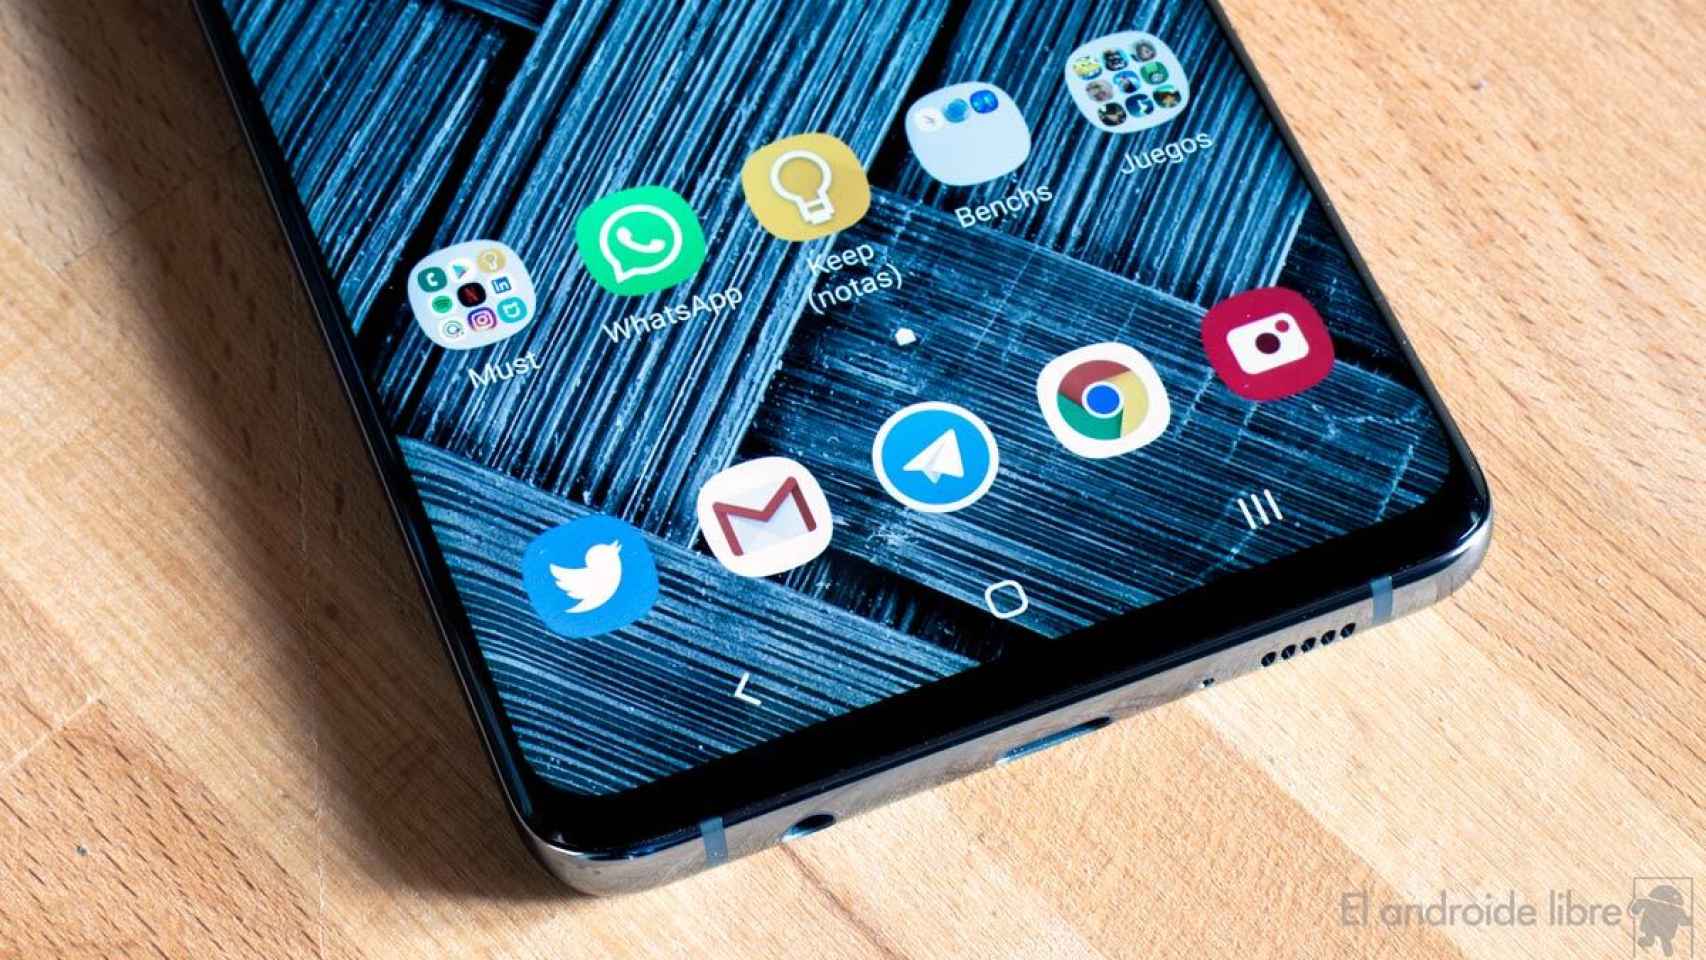 Android 10 con One UI 2.0 es filtrado en un Galaxy S10+